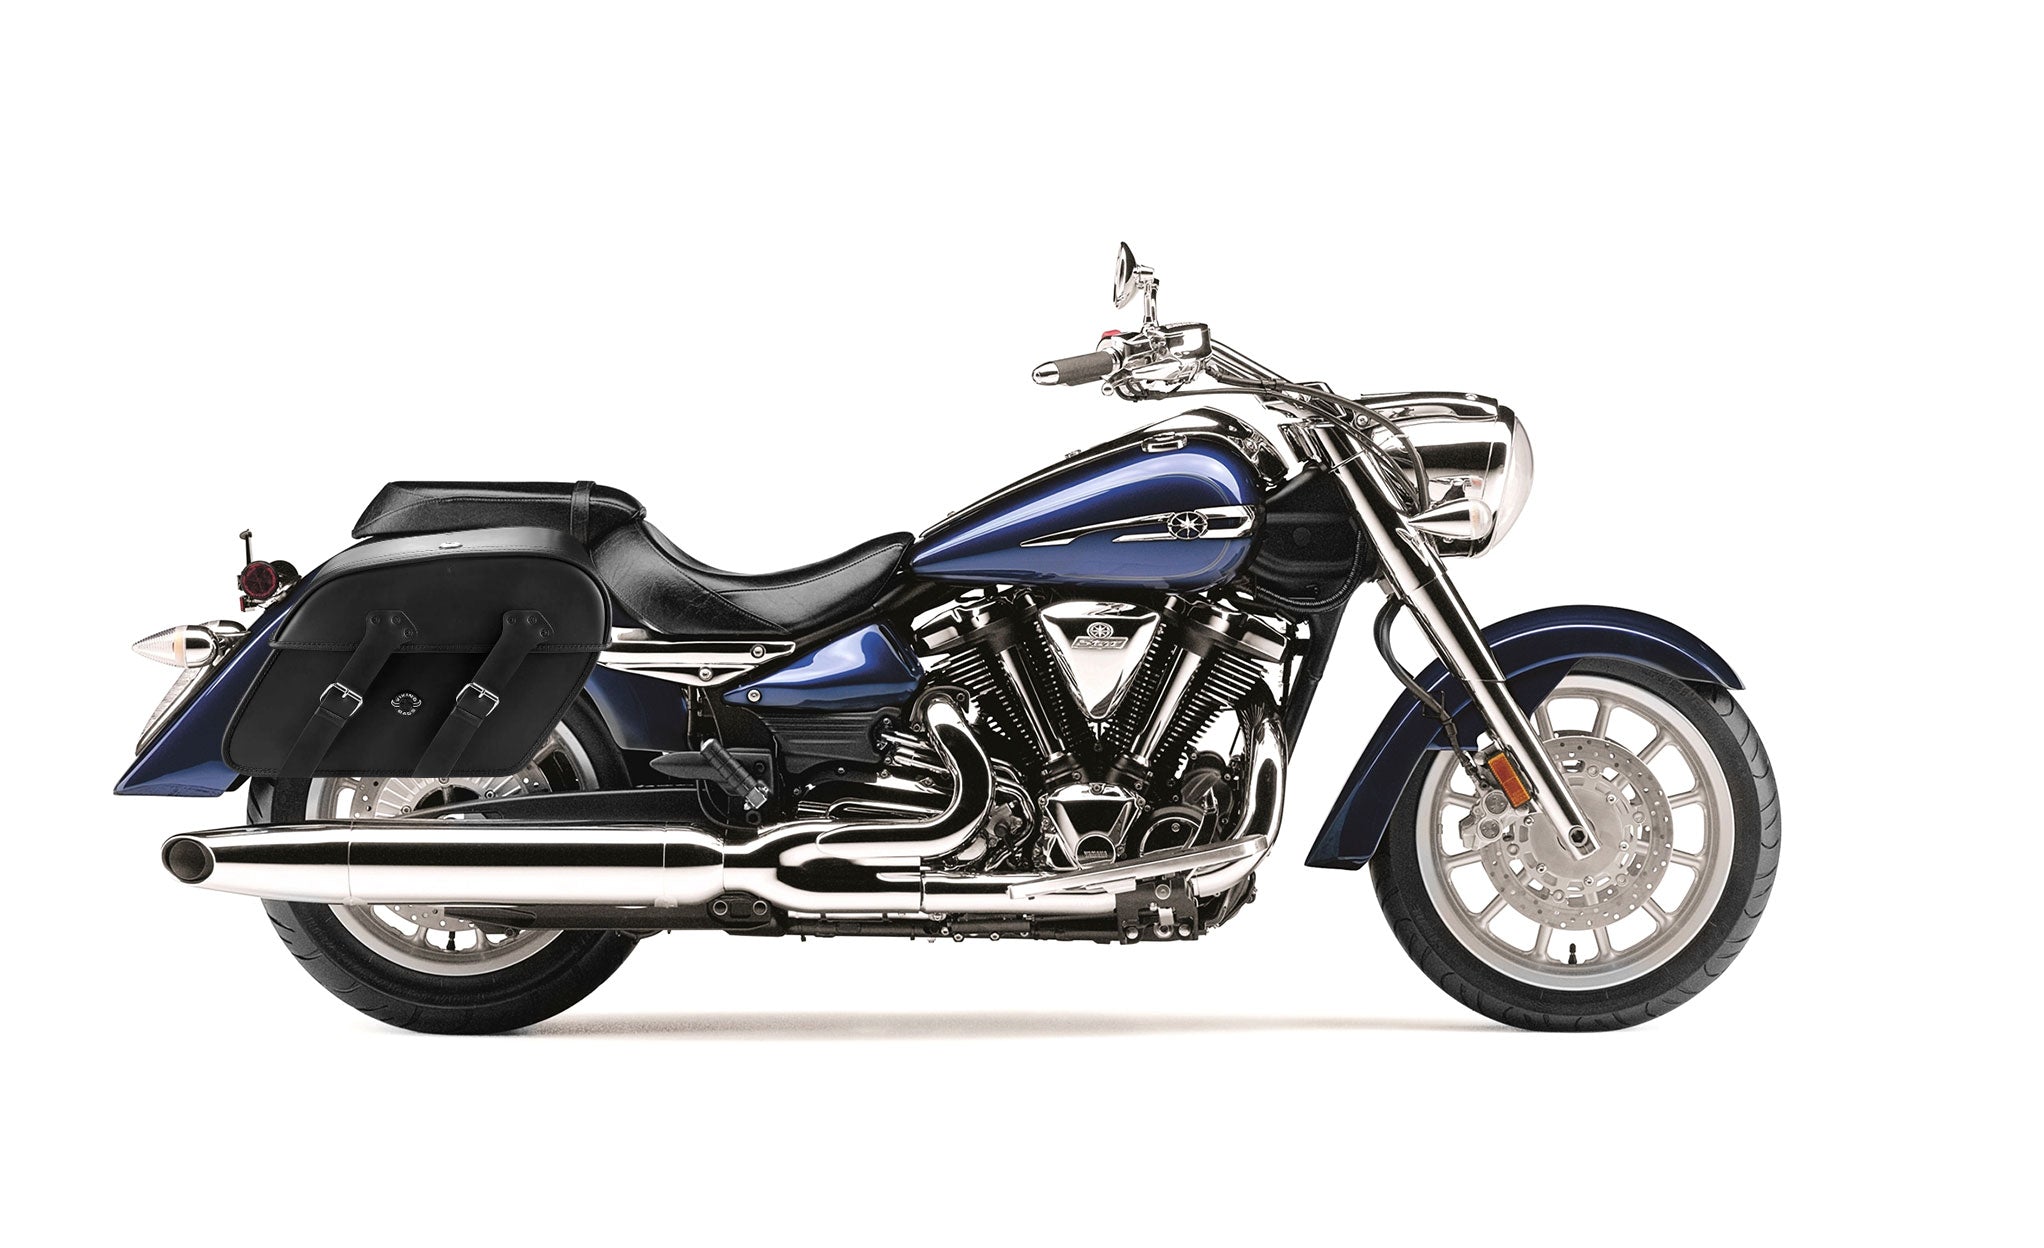 Viking Raven Extra Large Yamaha Stratoliner Xv 1900 Leather Motorcycle Saddlebags on Bike Photo @expand